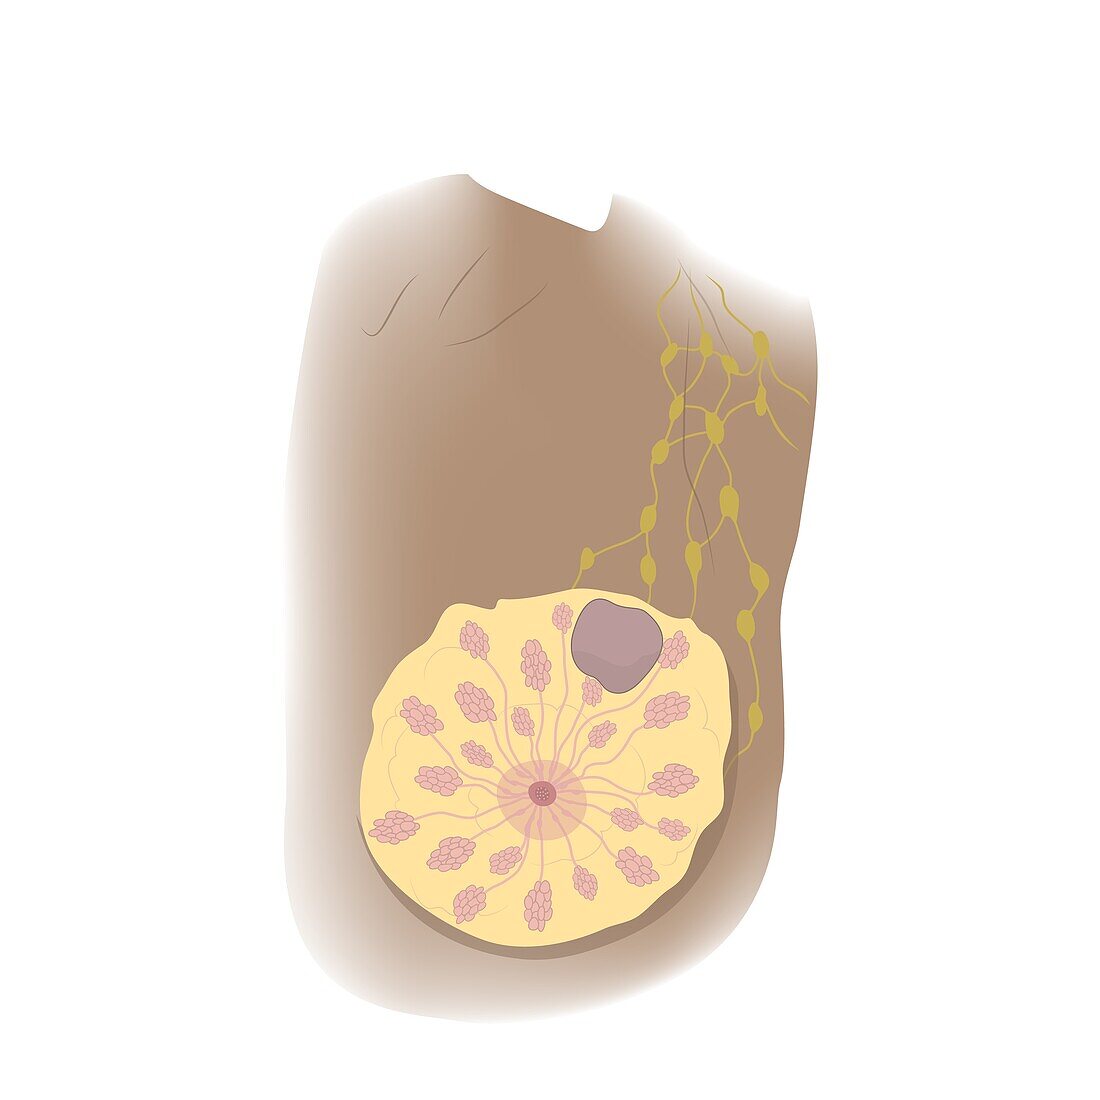 Fibroadenoma in female breast, illustration